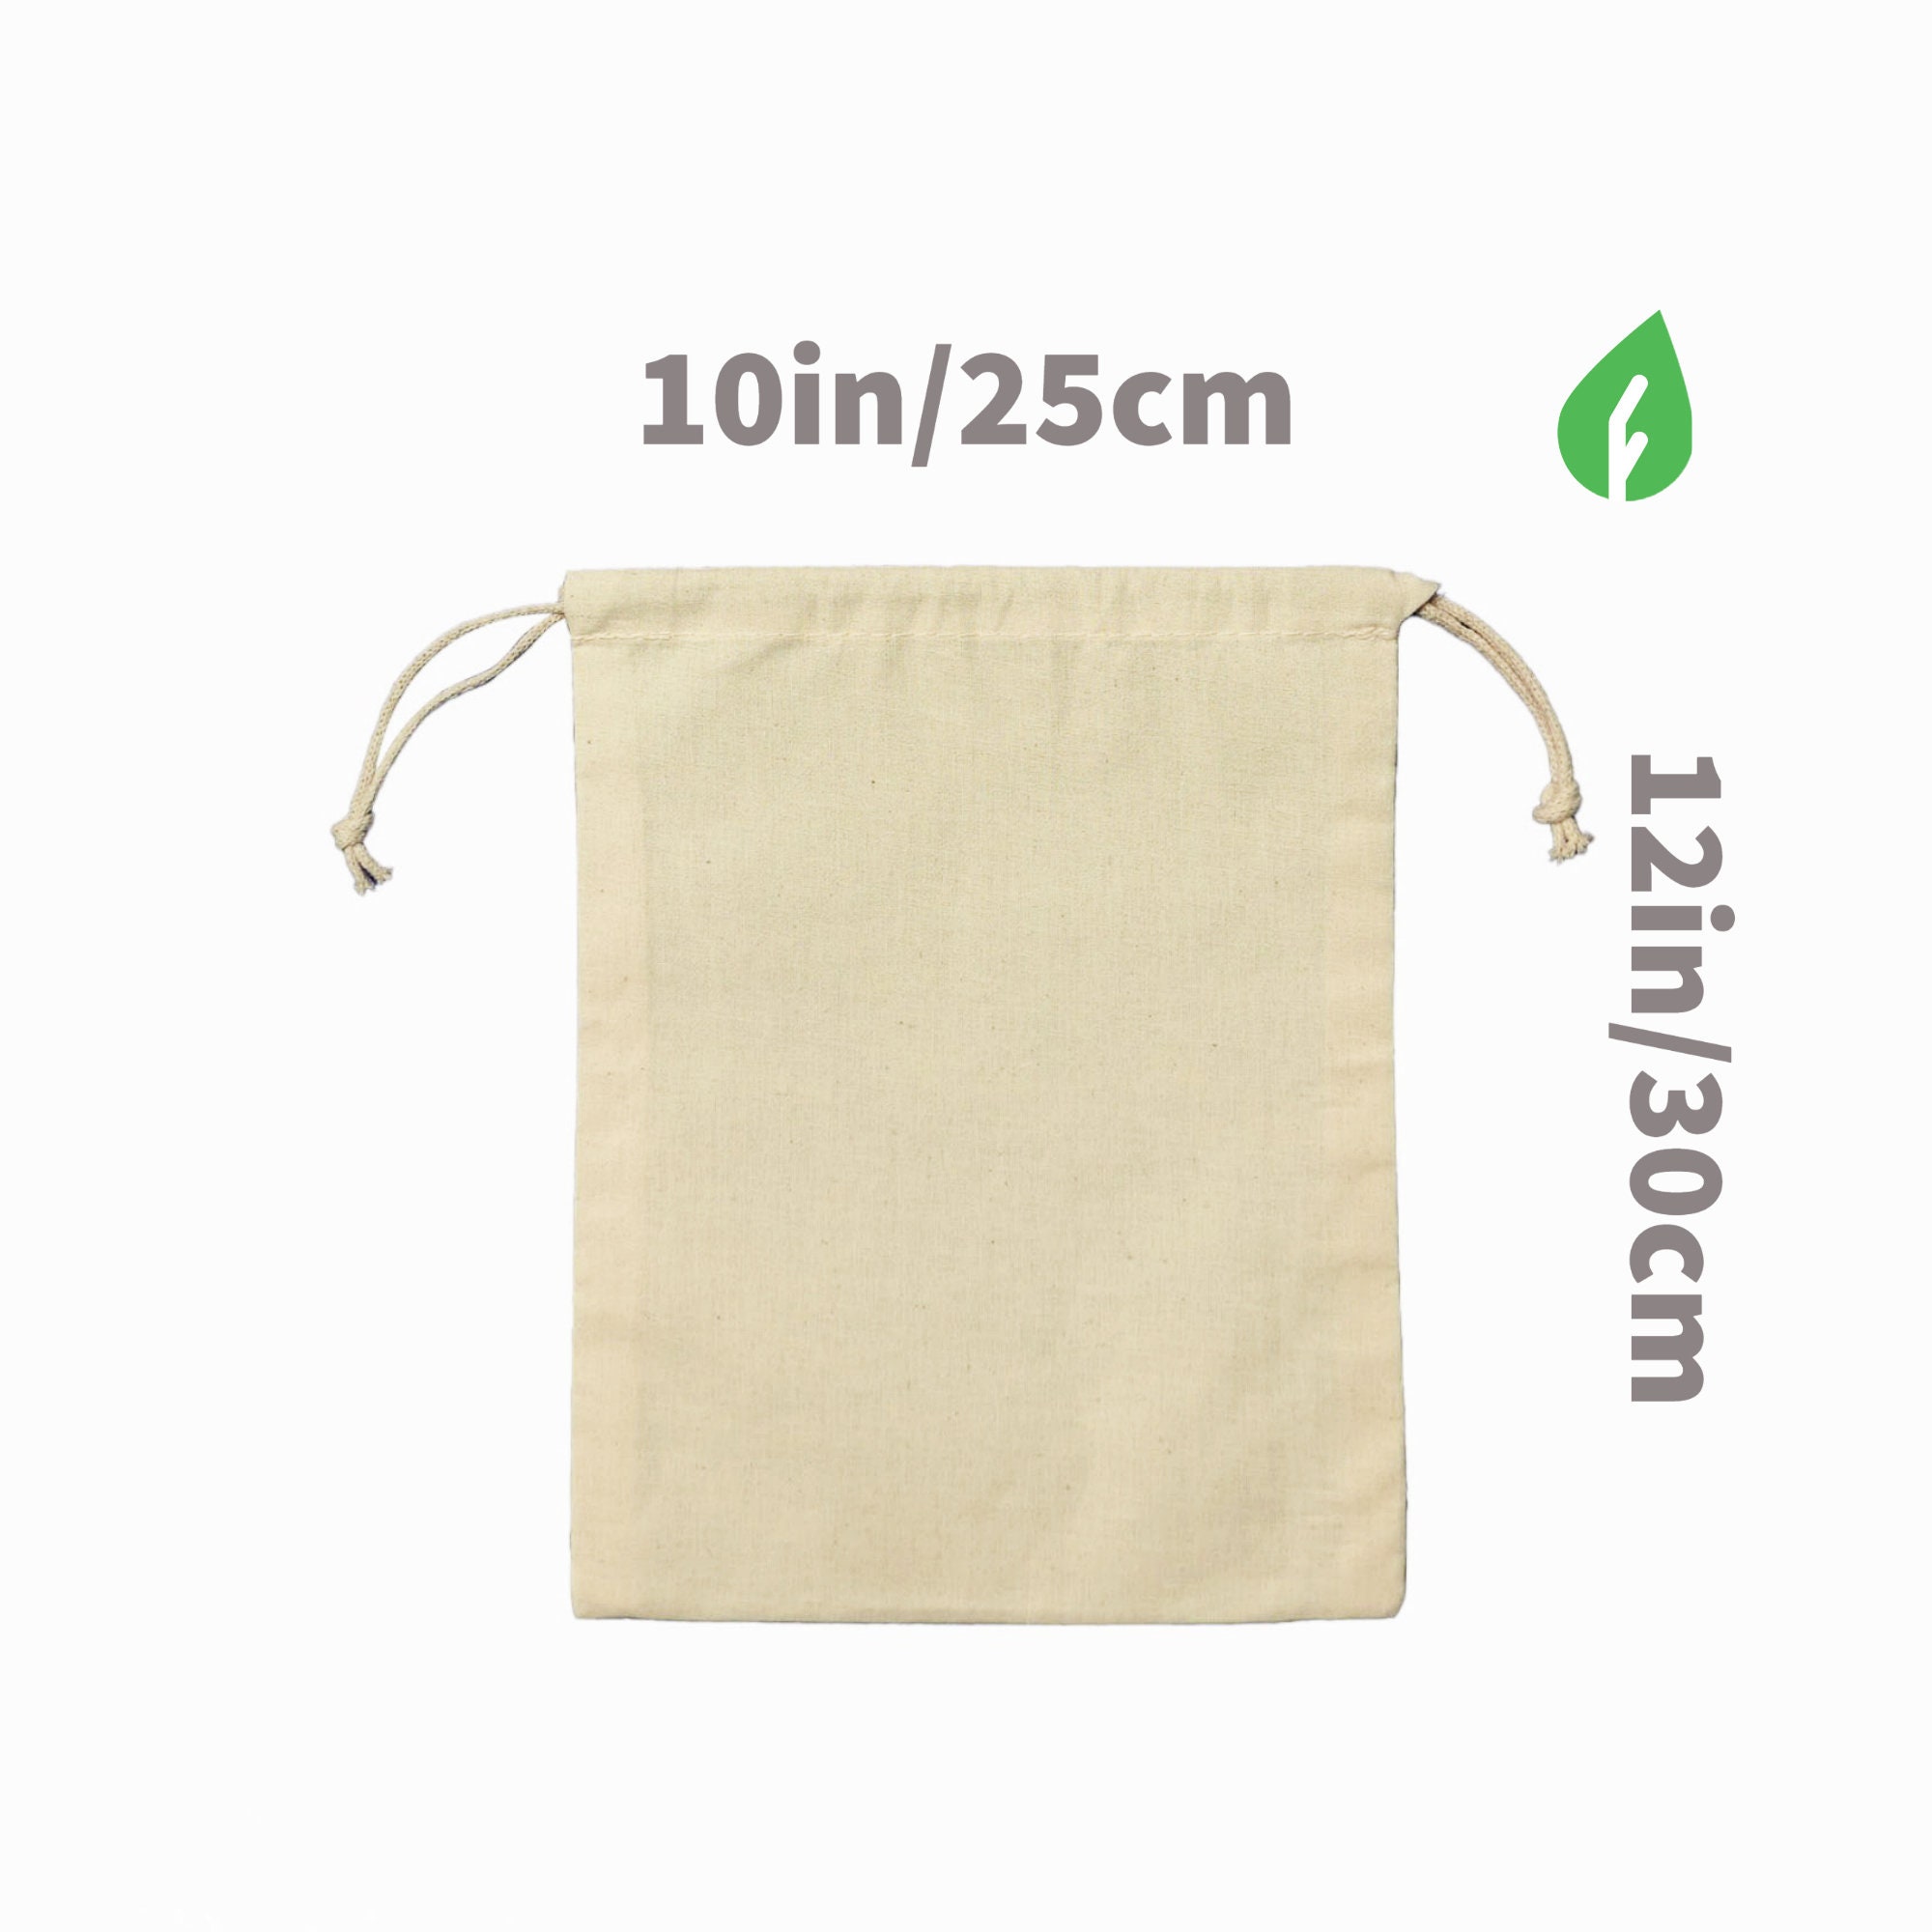 Reclosable Zipper Bag - 12 x 12, T-shirts, Textiles [3SZ1212]